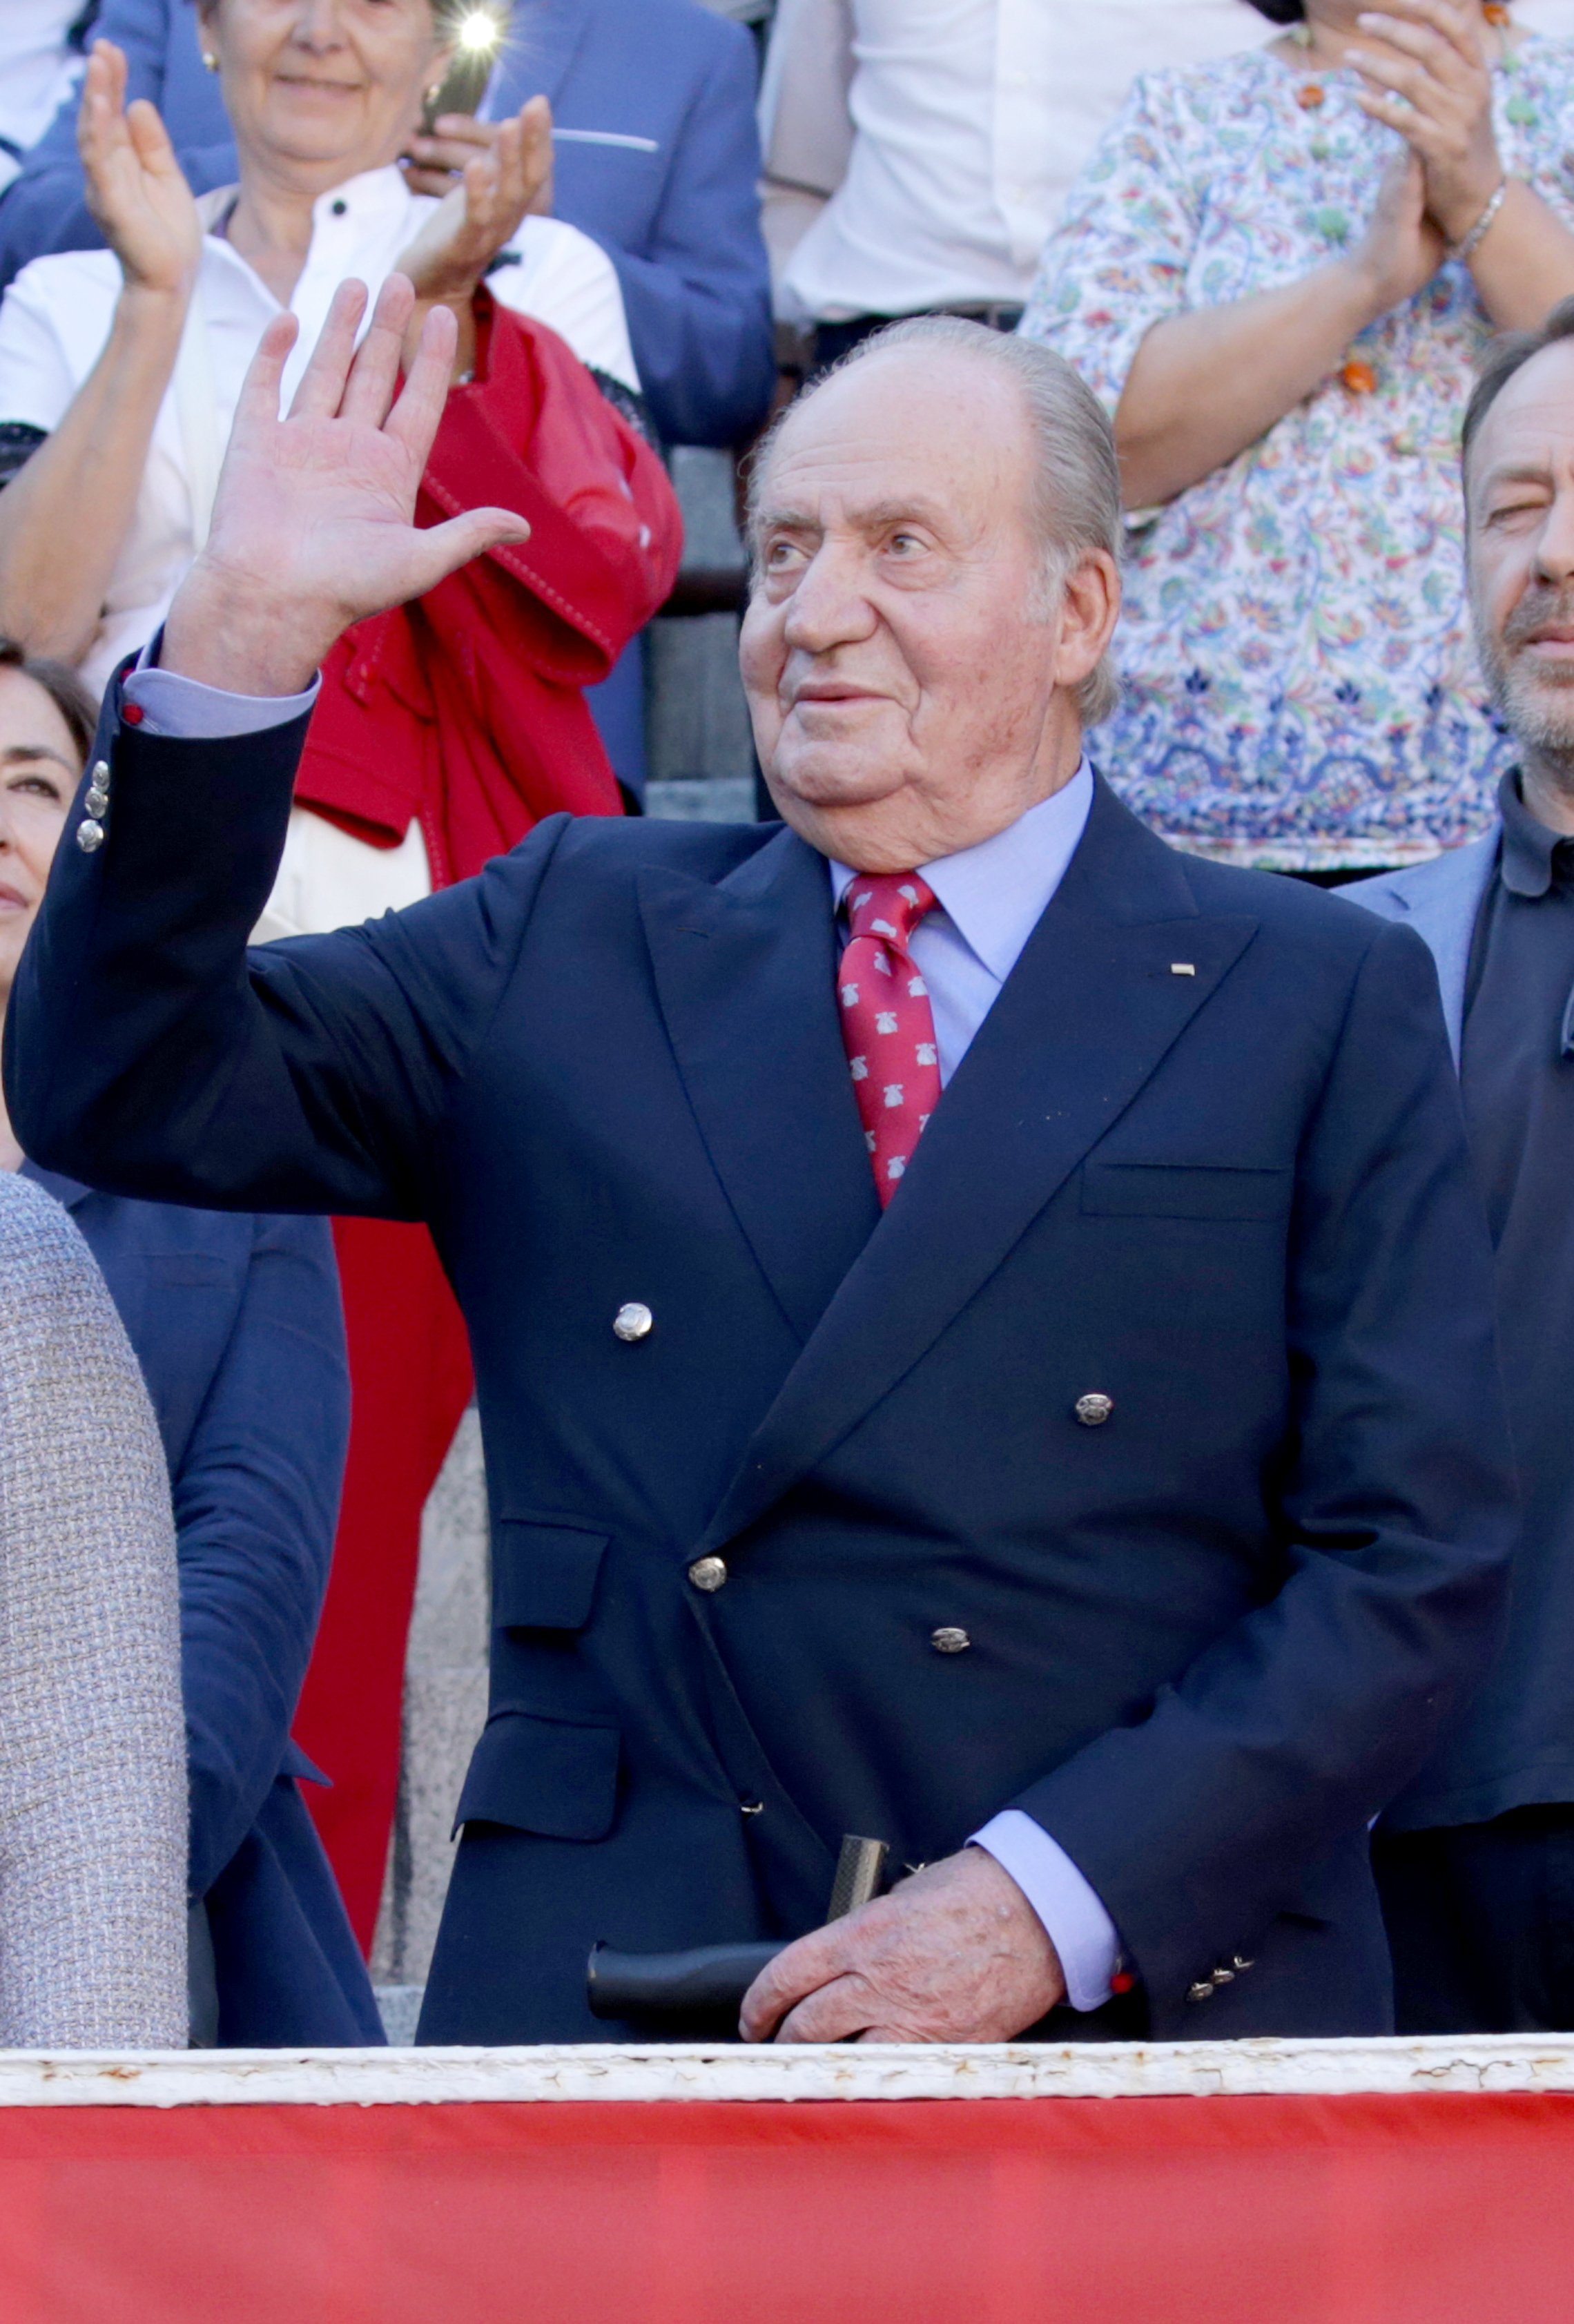 Joan Carles I penja el telèfon a Jordi Évole per no parlar d’elefants